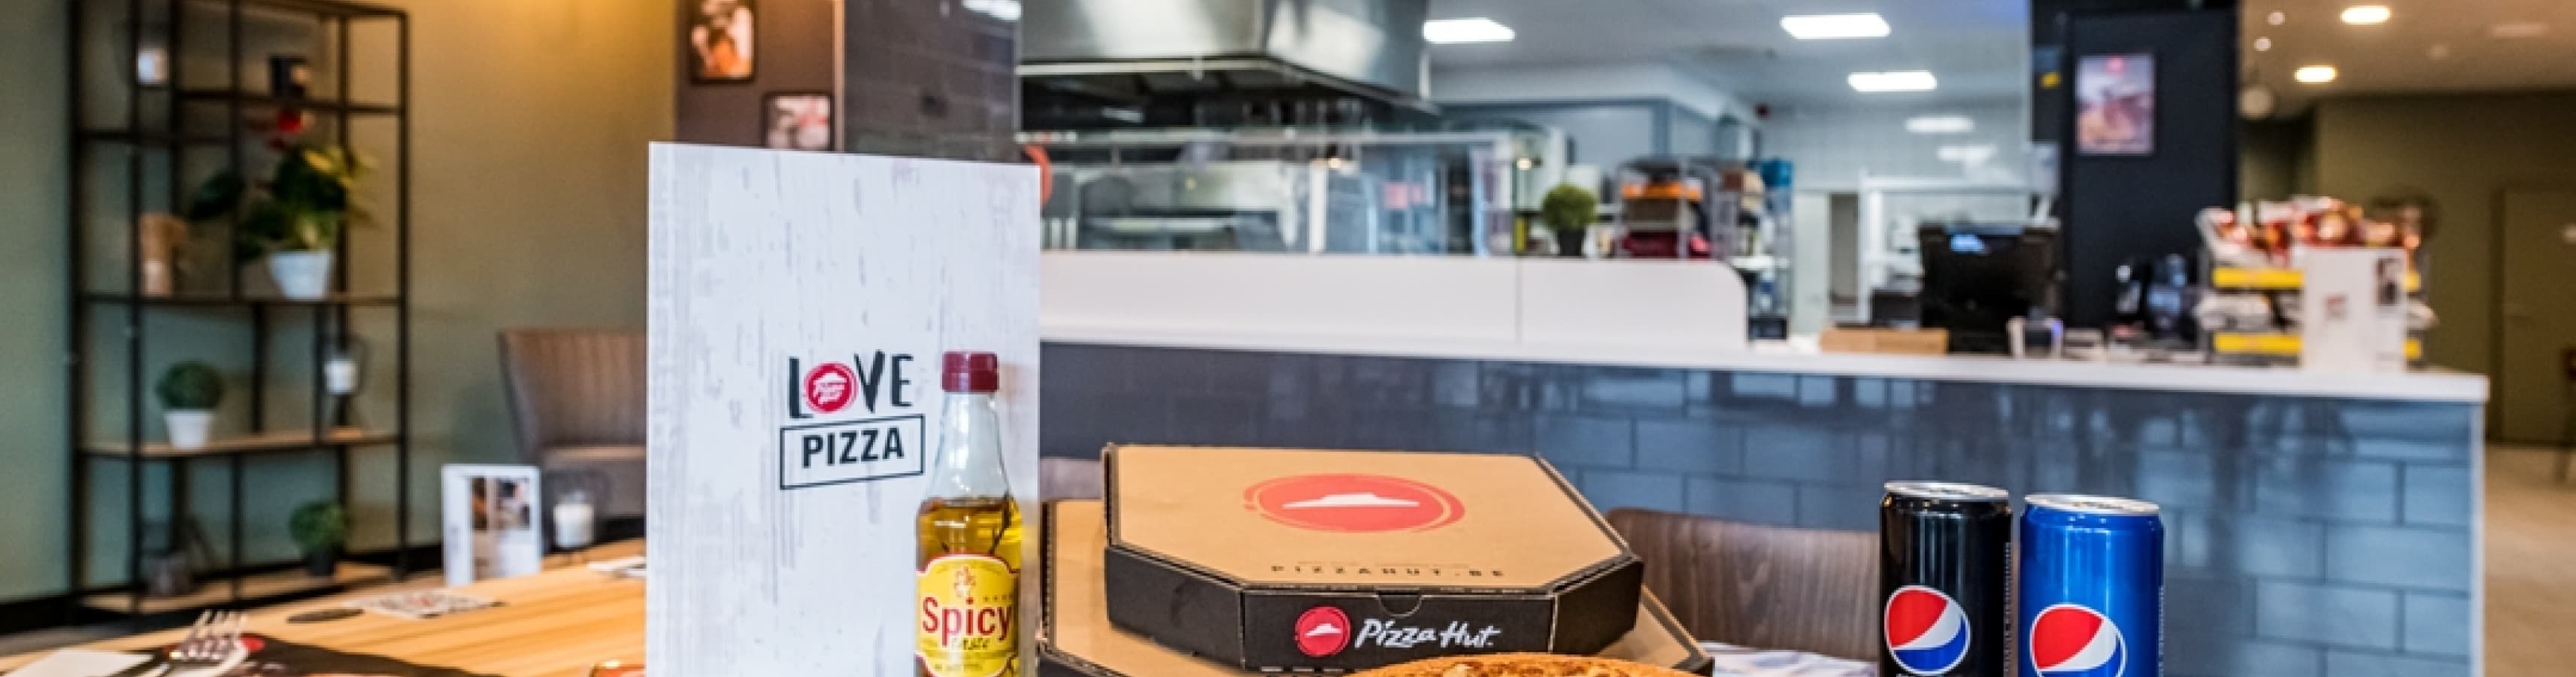 Pizza Hut Delivery Binche